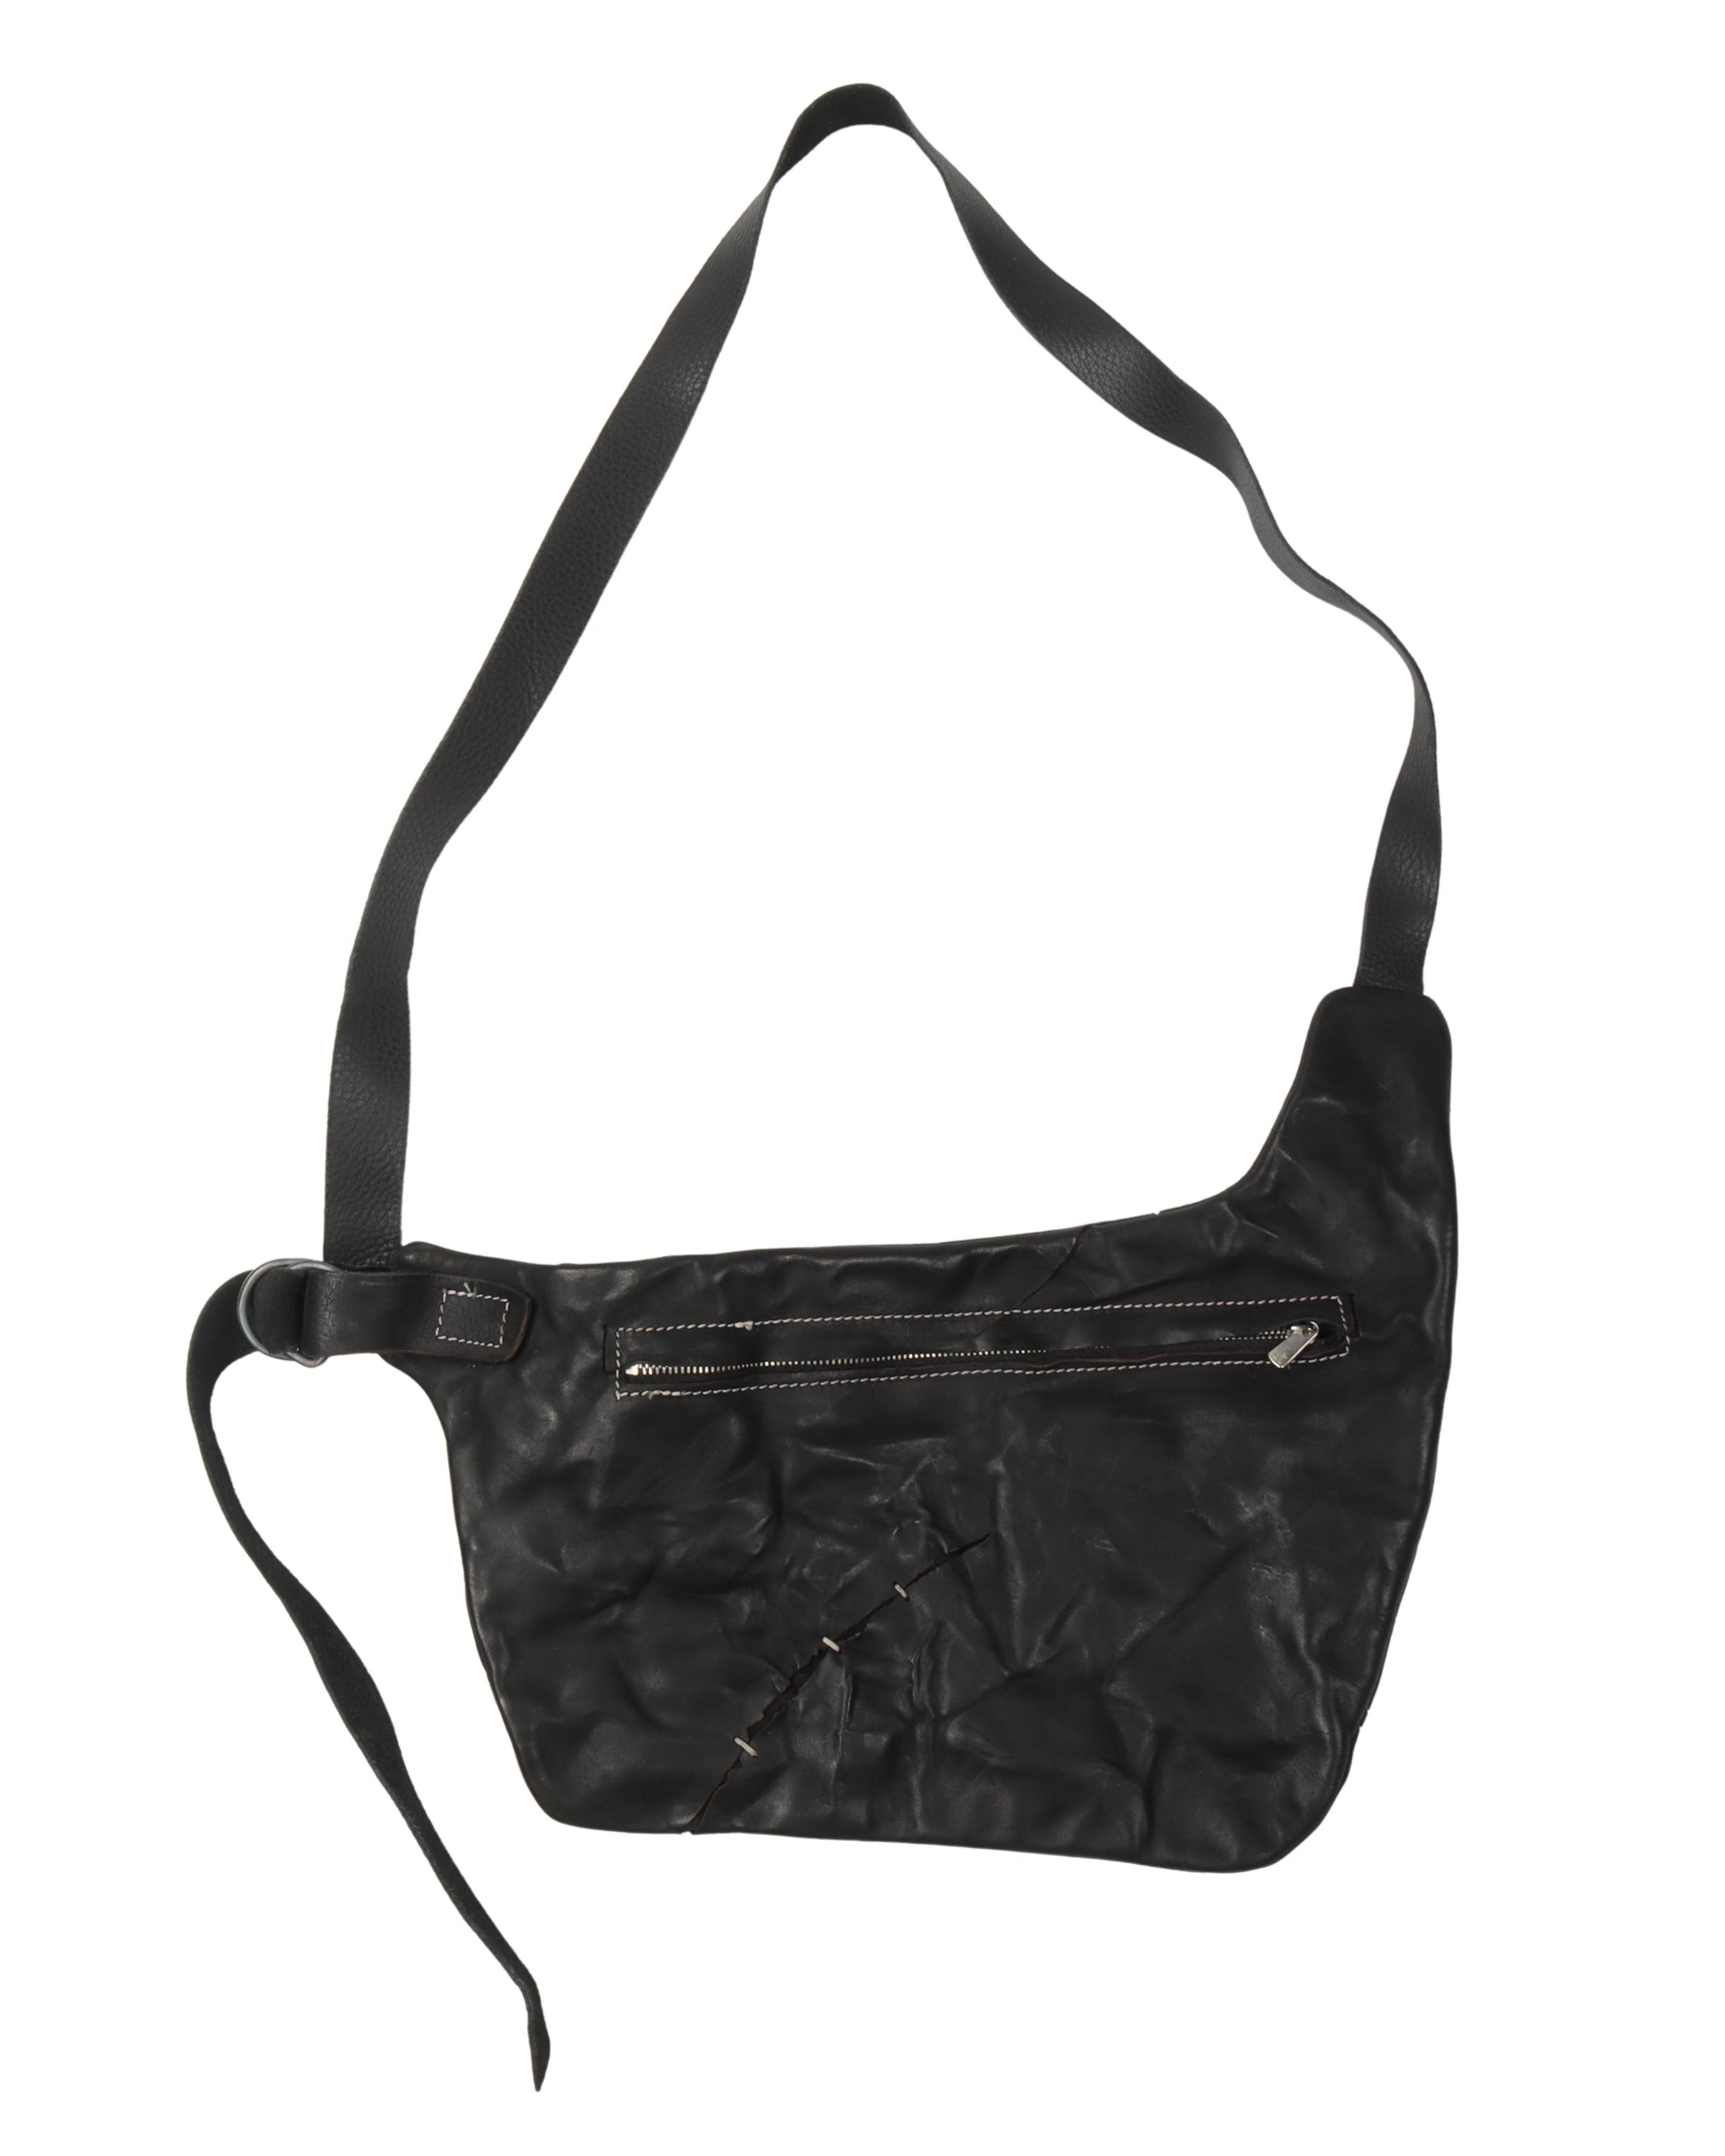 Cracked Leather Shoulder Bag